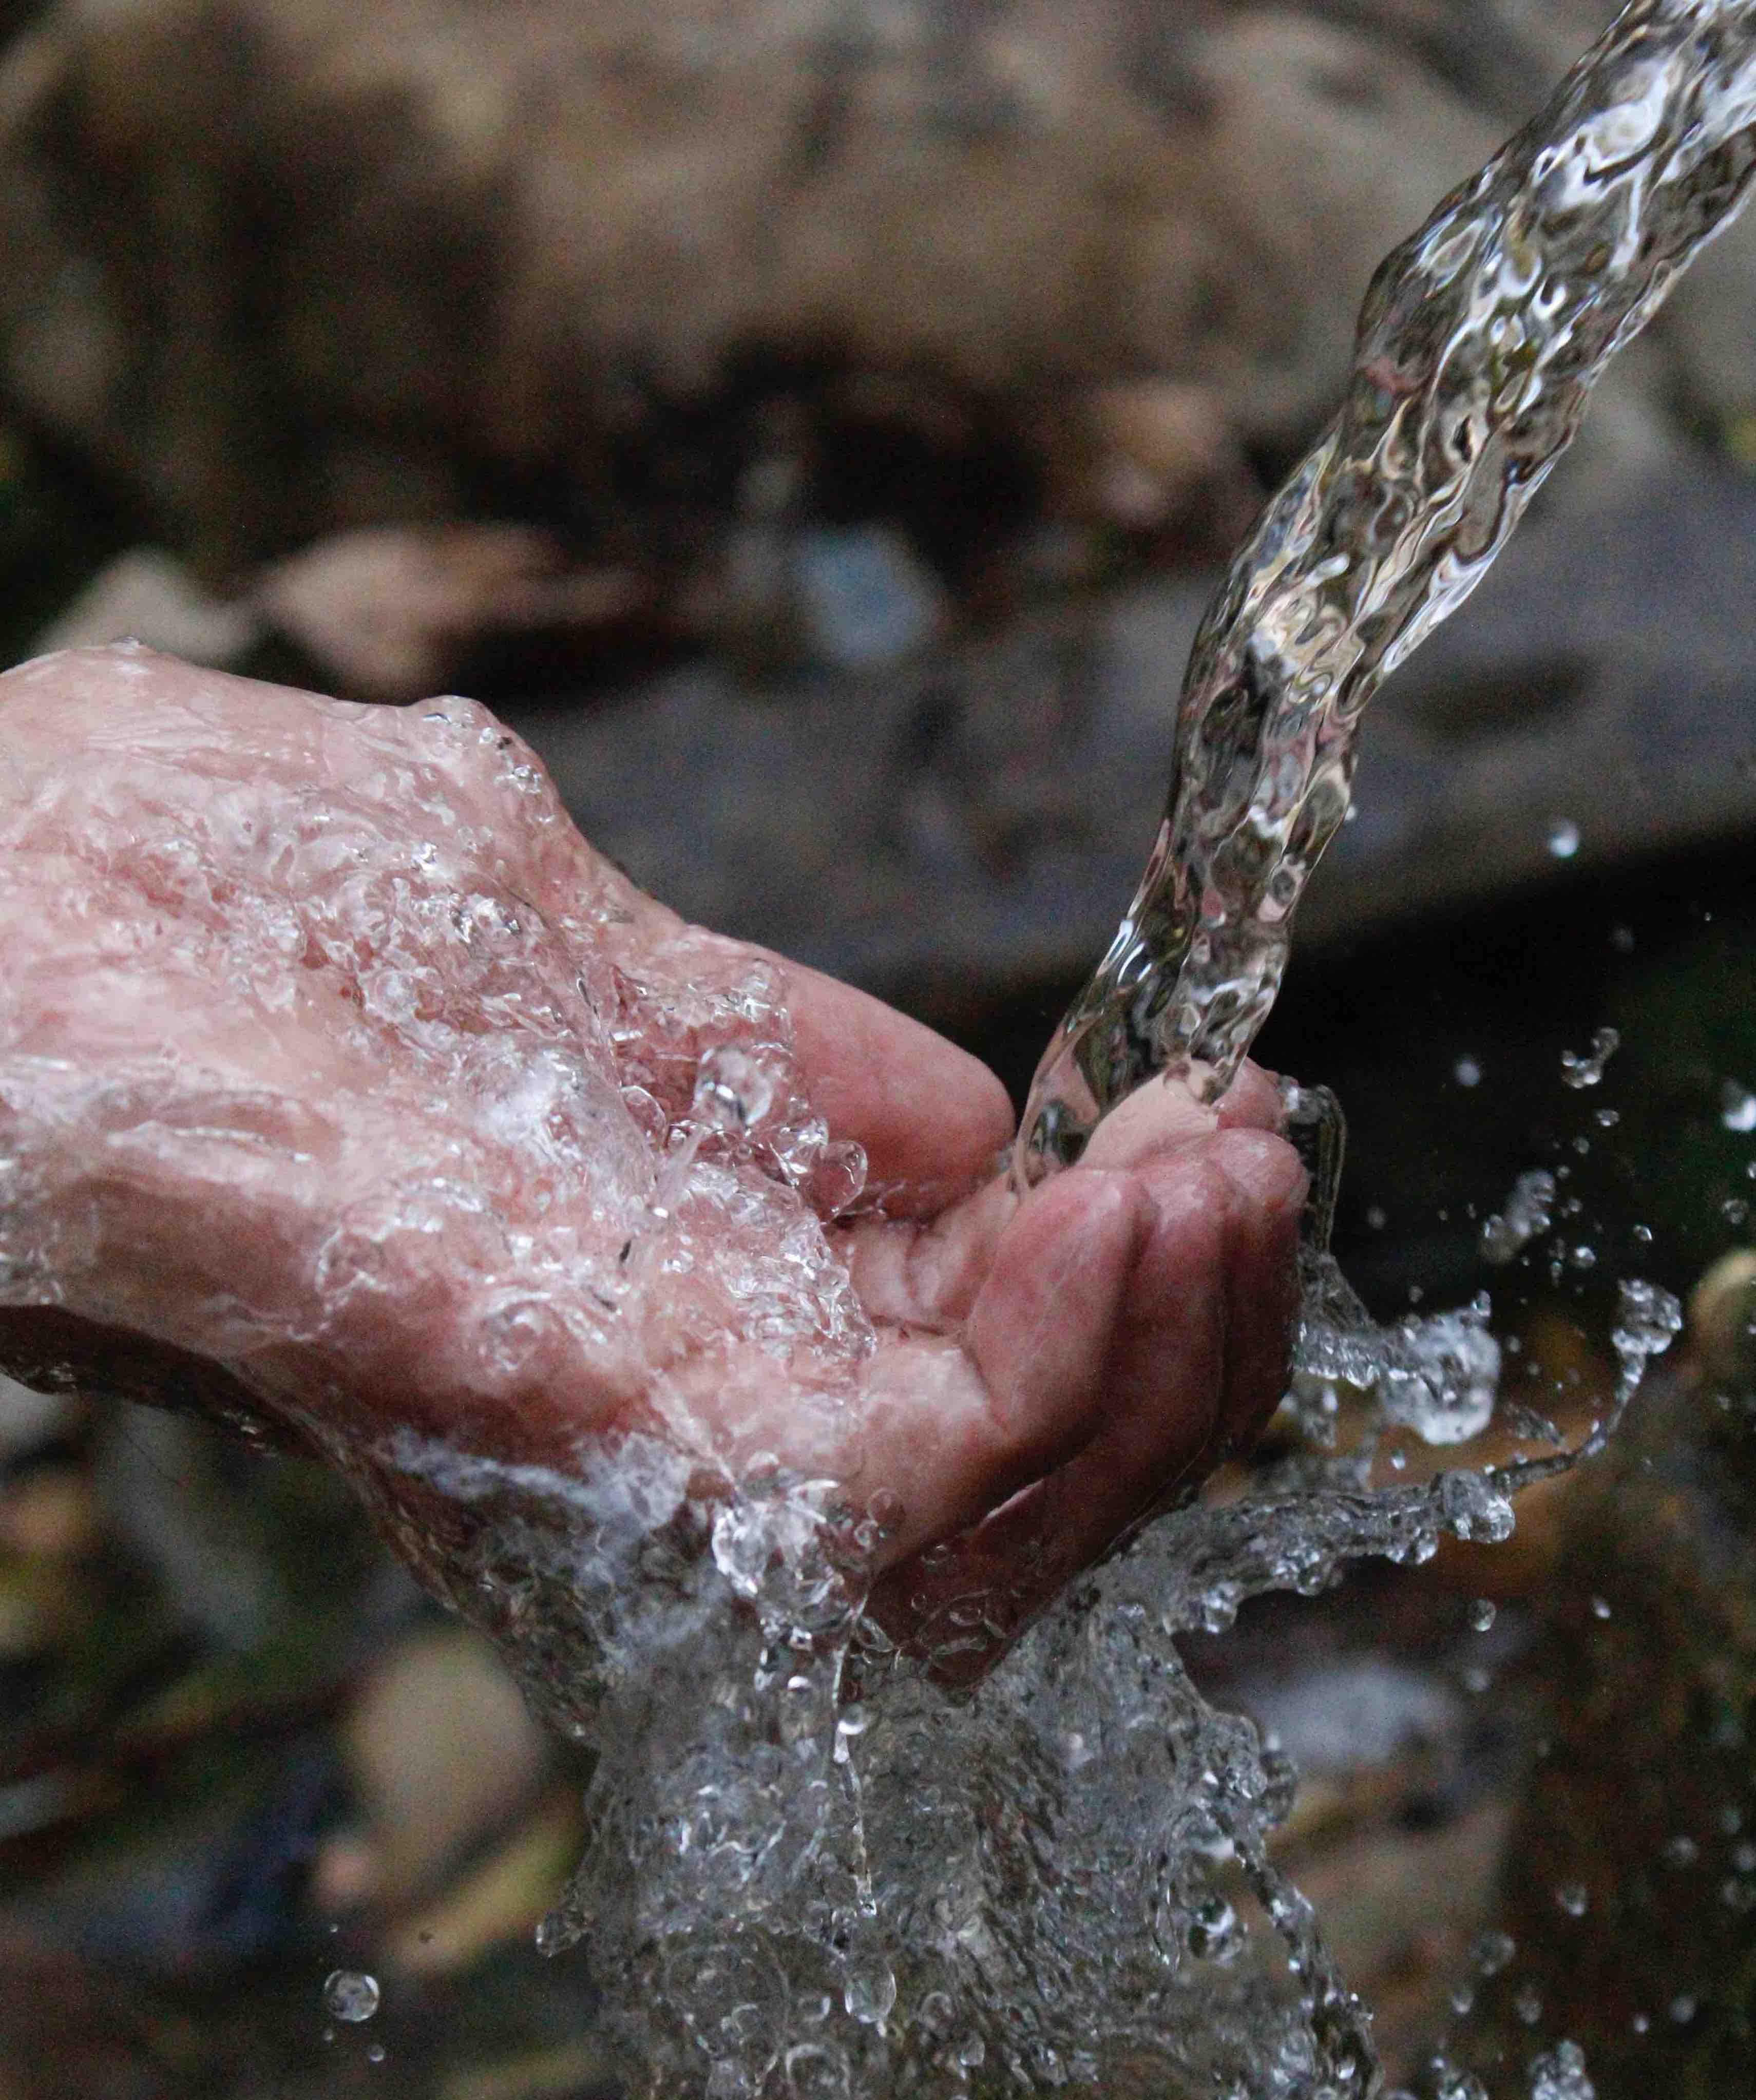 Damulog Bukidnon marginalized barangay to receive ceramic water filters